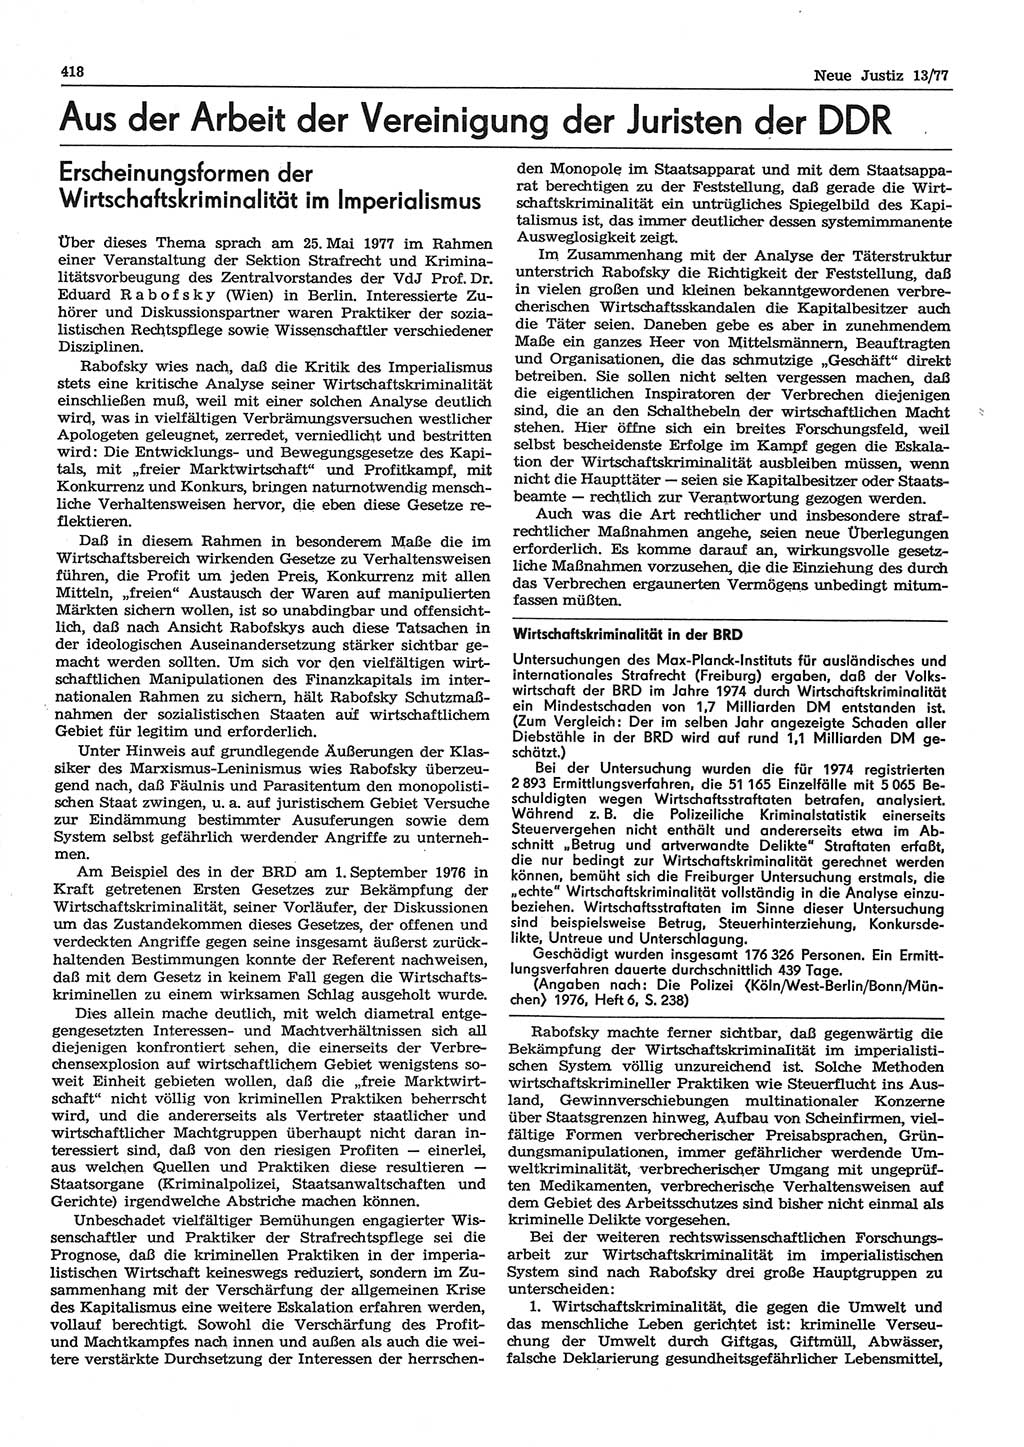 Neue Justiz (NJ), Zeitschrift für Recht und Rechtswissenschaft-Zeitschrift, sozialistisches Recht und Gesetzlichkeit, 31. Jahrgang 1977, Seite 418 (NJ DDR 1977, S. 418)